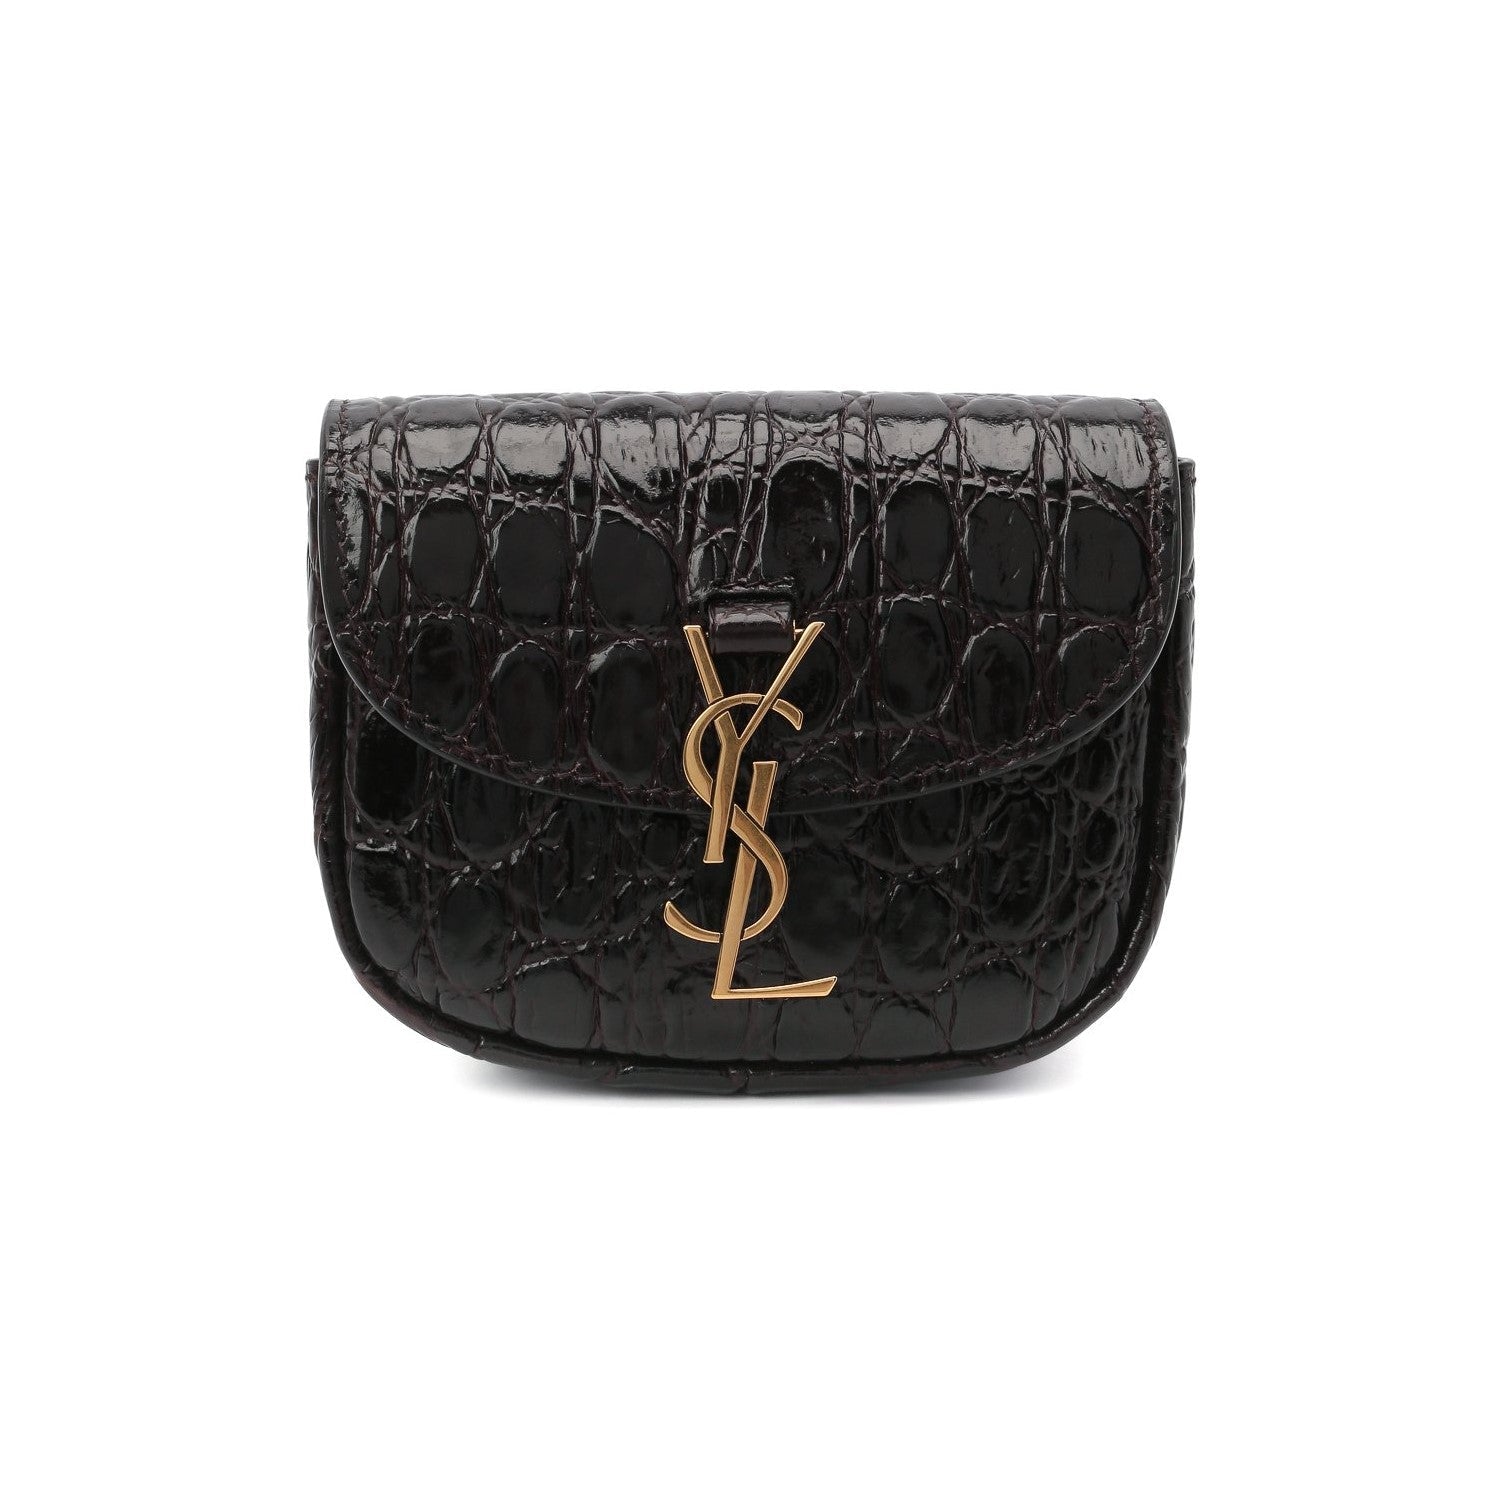 Saint Laurent Kaia Black Leather Croc Embossed Mini Belt Bag 634922